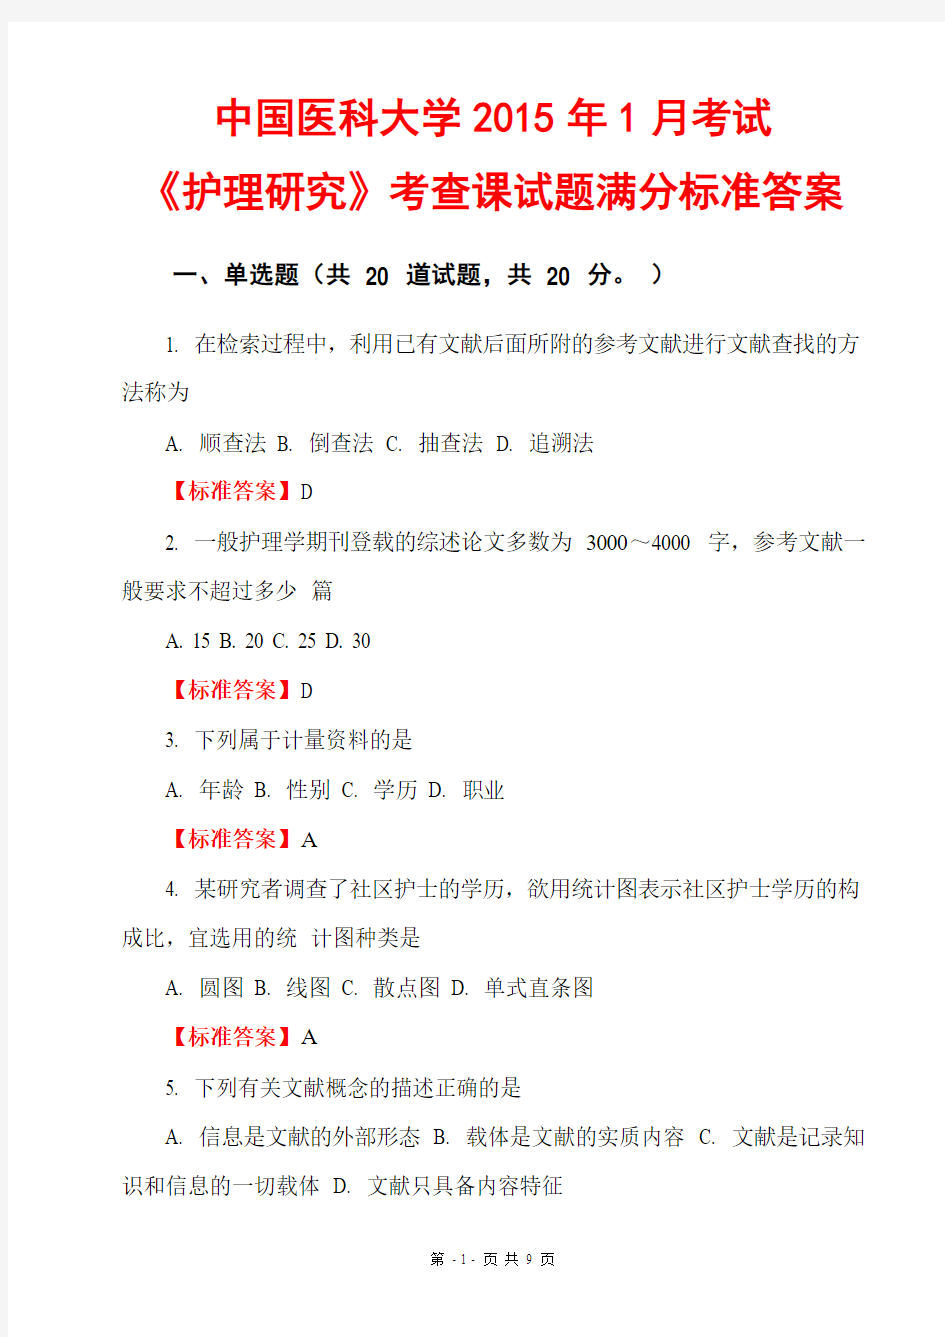 中国医科大学2015年1月考试《护理研究》考查课试题满分标准答案